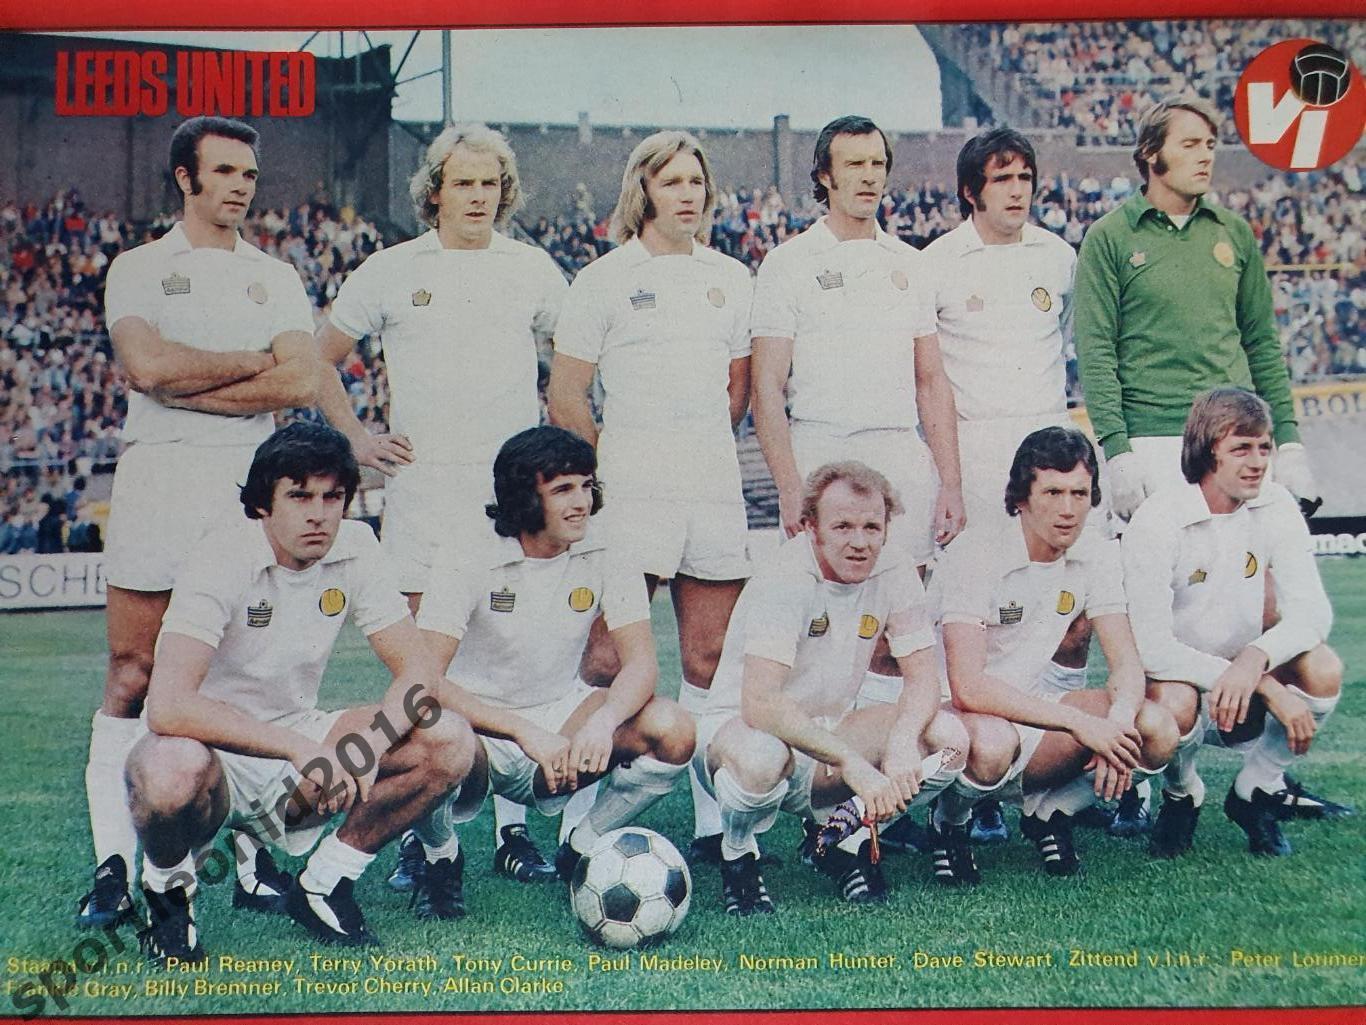 Voetbal International 1977 51 выпуск годовая подписка .Обобщённый). 1